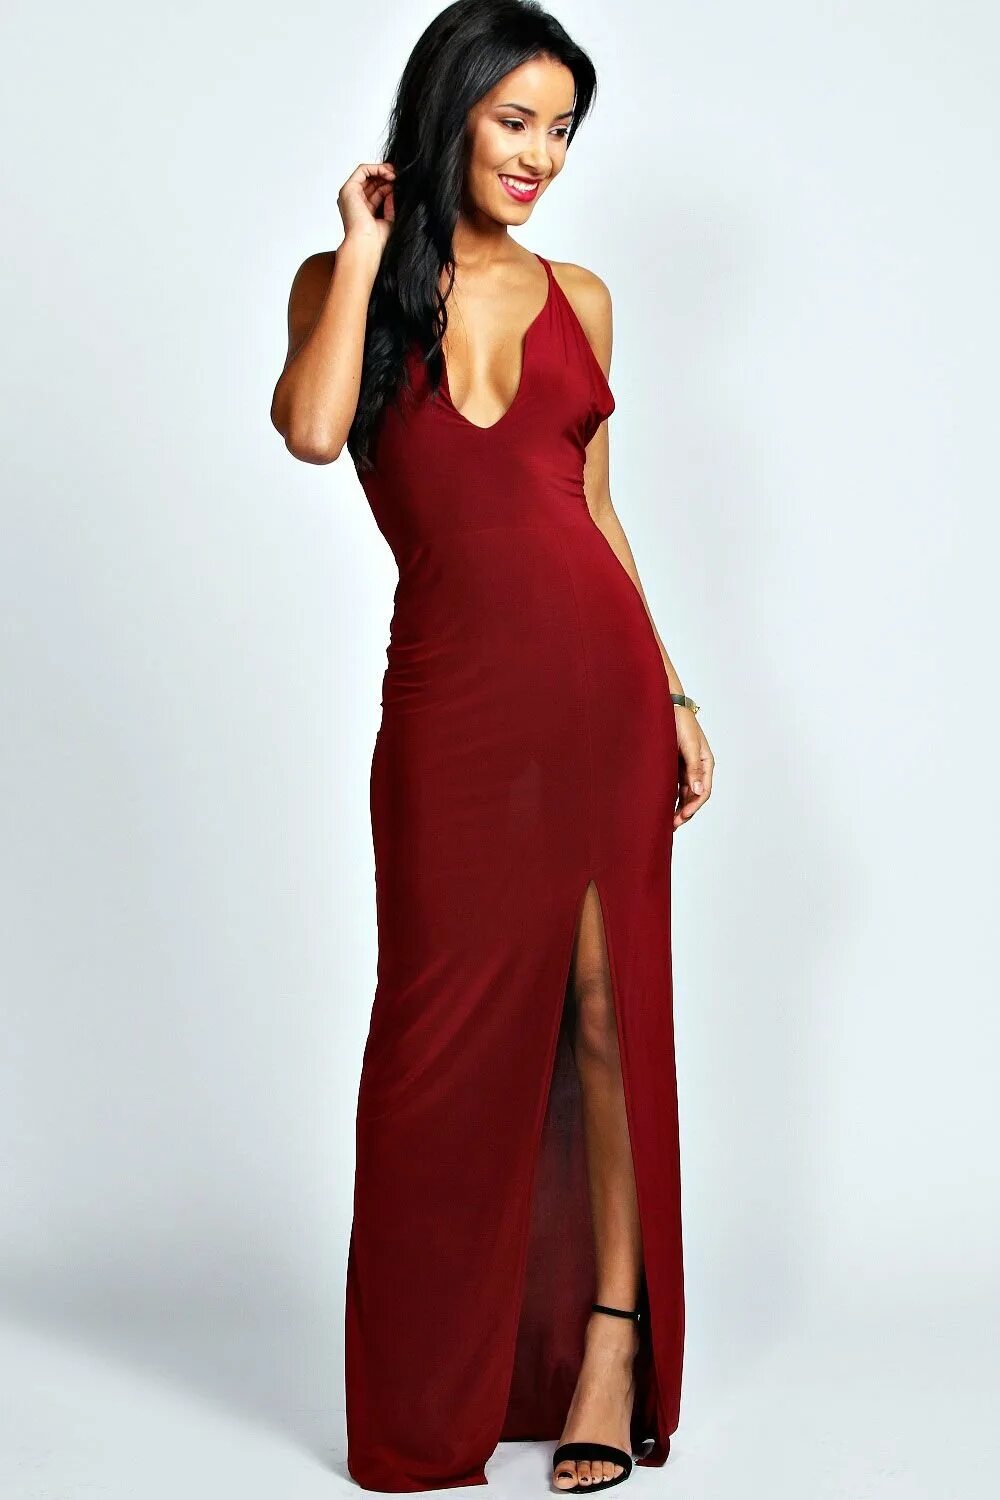 Вырез снизу. Атласное платье комбинация Maxi boohoo. Красное макси платье декольте. Платье с разрезом. Длинное платье с вырезом.